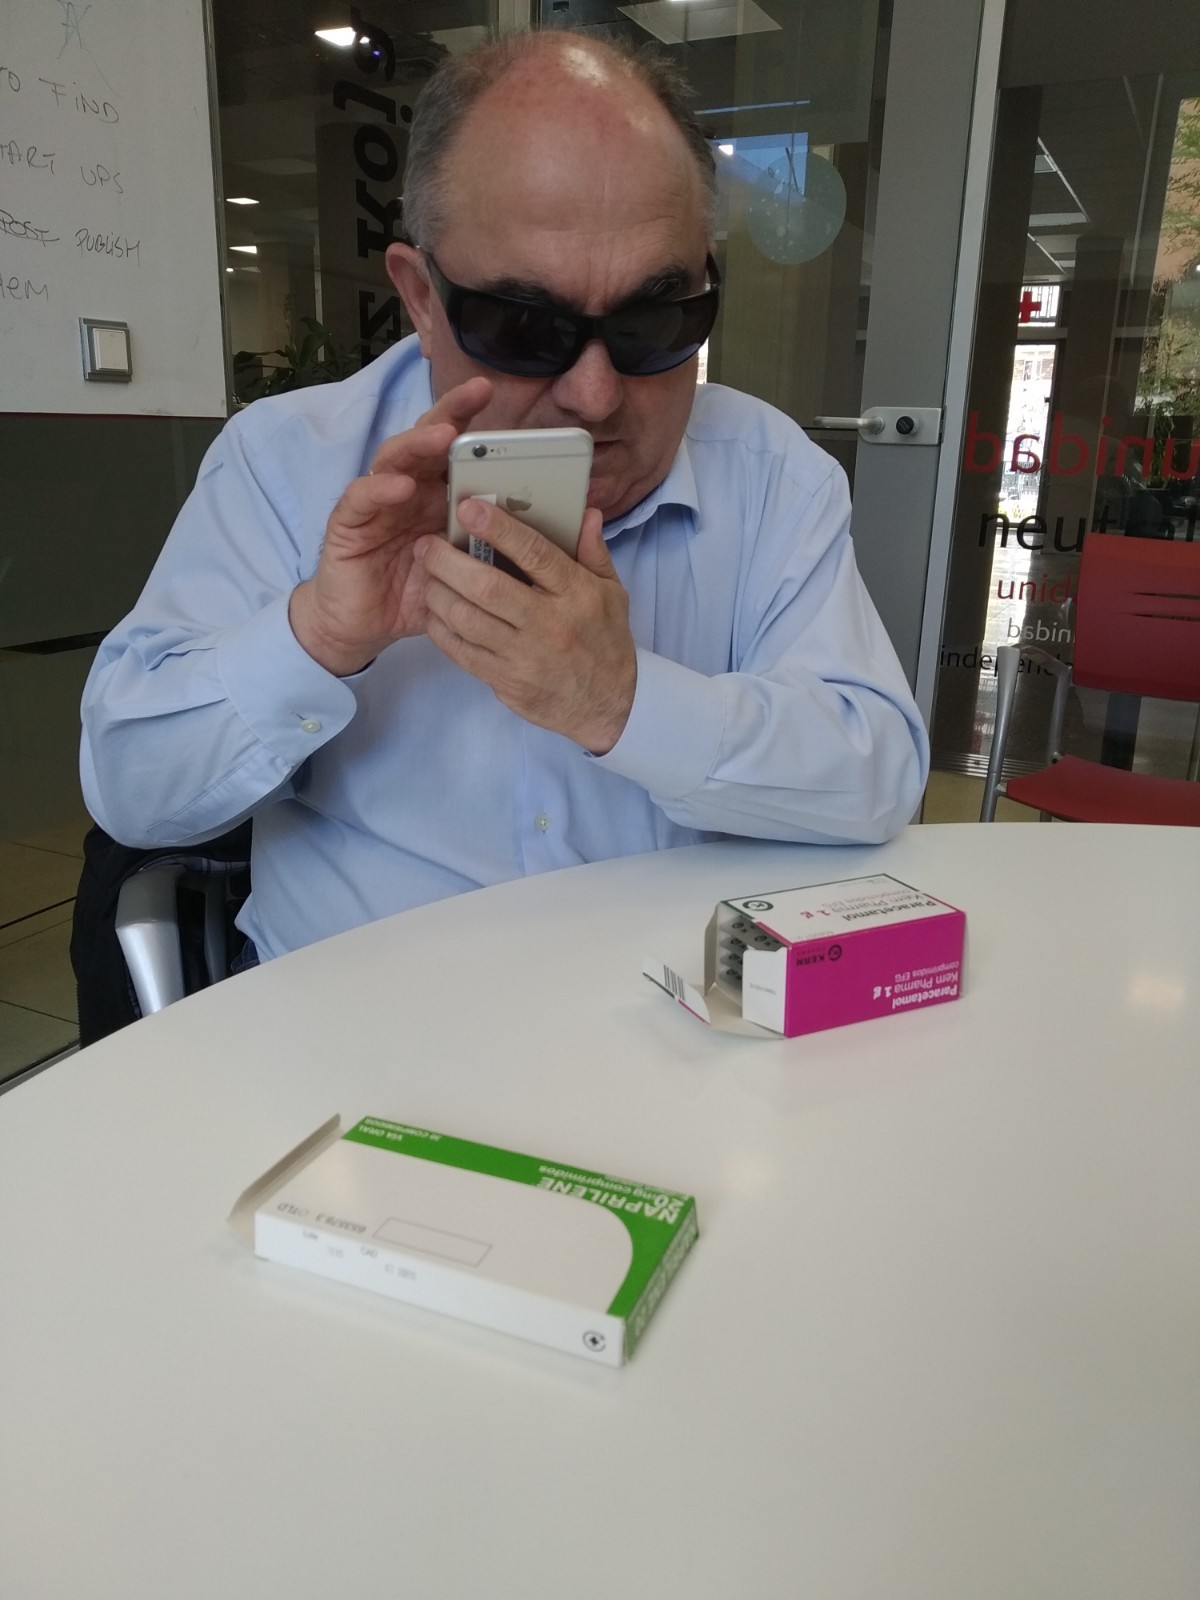 Andrés con la aplicación en el móvil y dos cajas de medicamentos sobre la mesa